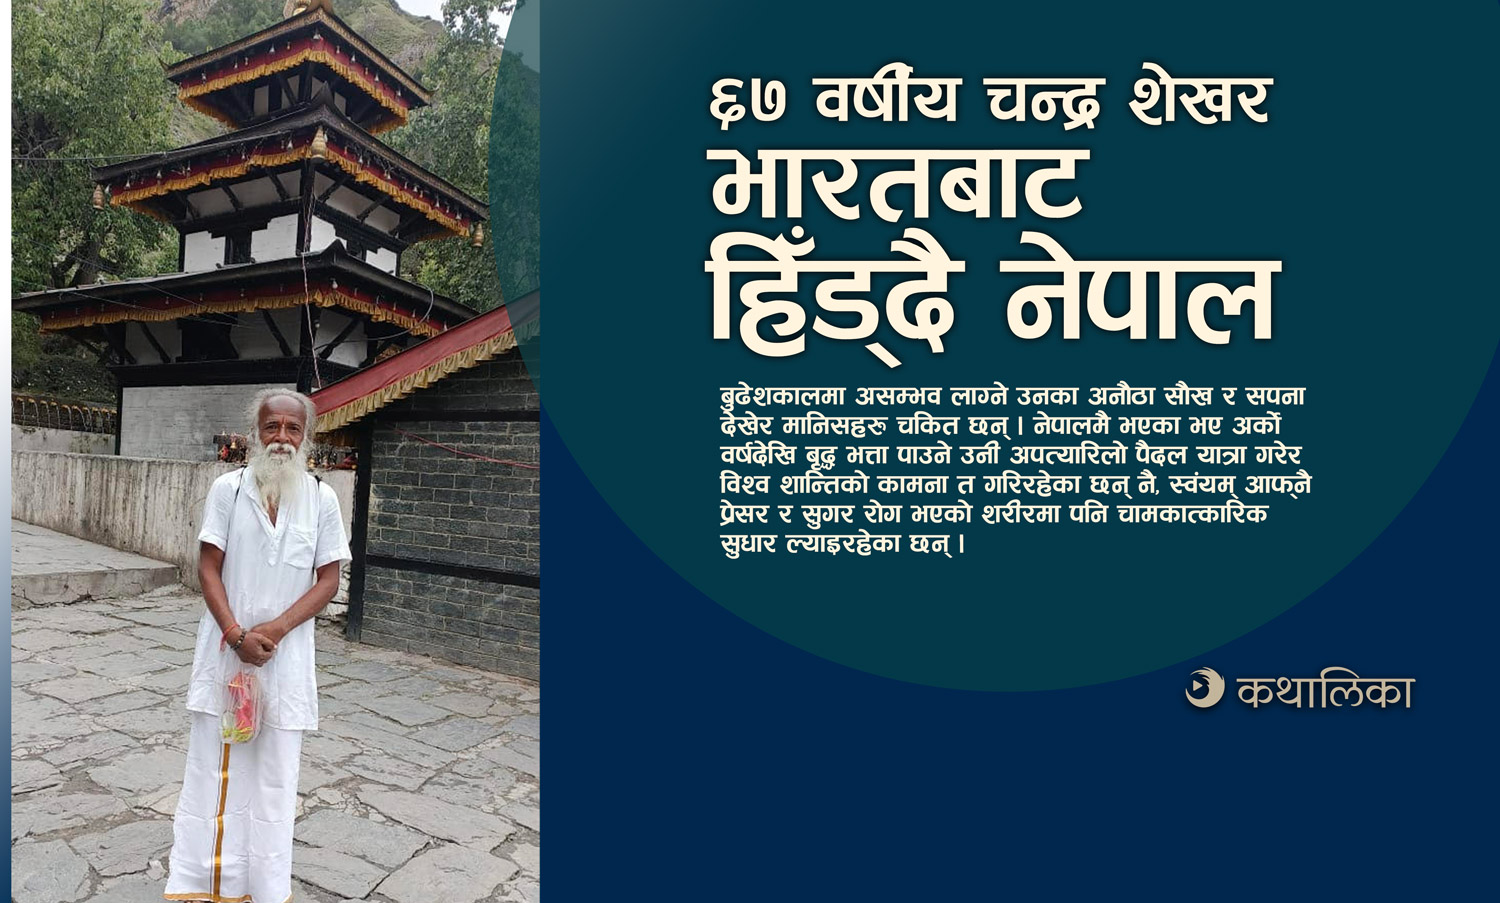  एक जब्बर यात्राः सरसठ्ठी वर्षमा भारतबाट हिँड्दै नेपाल